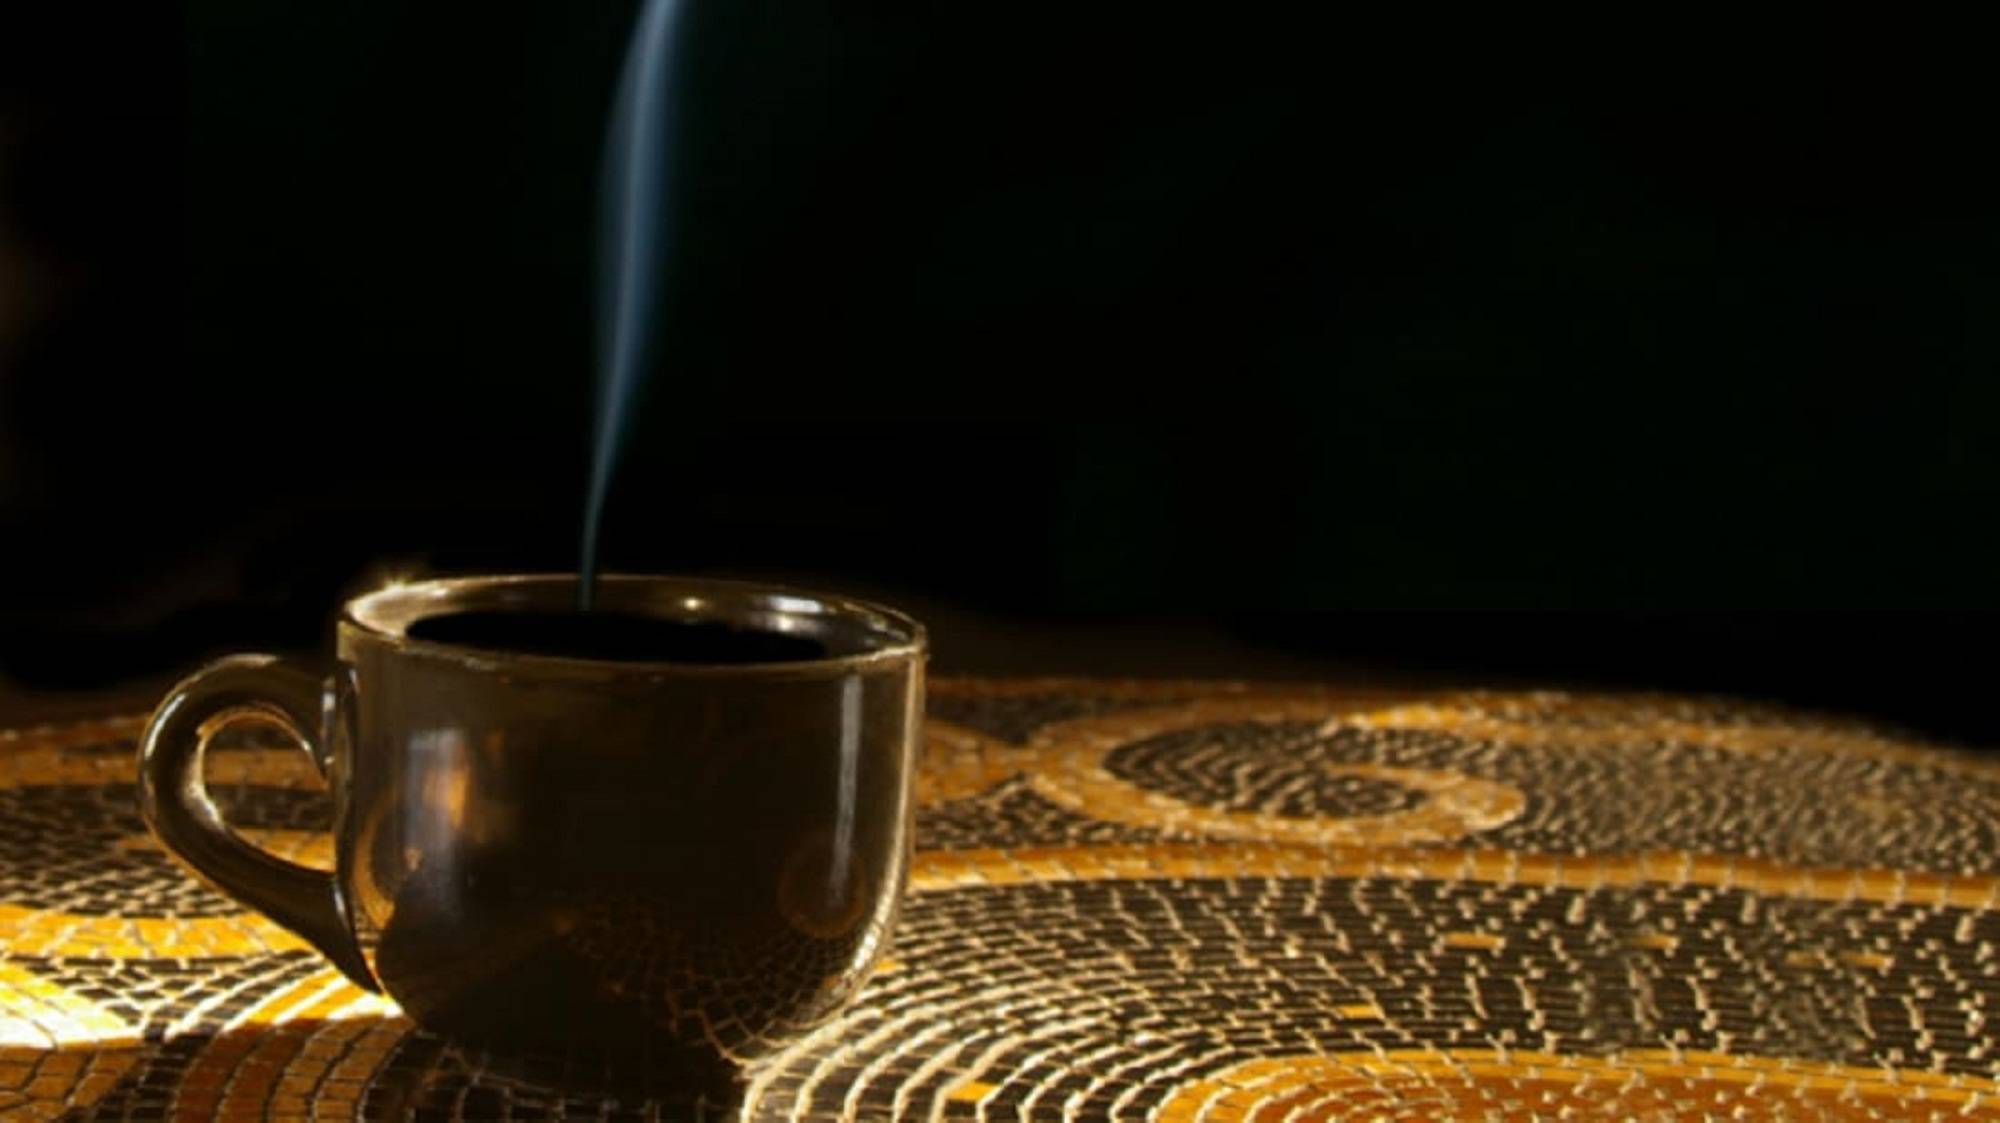 Cafeaua – adevărata băutură a zeilor. Povestea unor mari personalități ale lumii care nu puteau trăi fără cafea